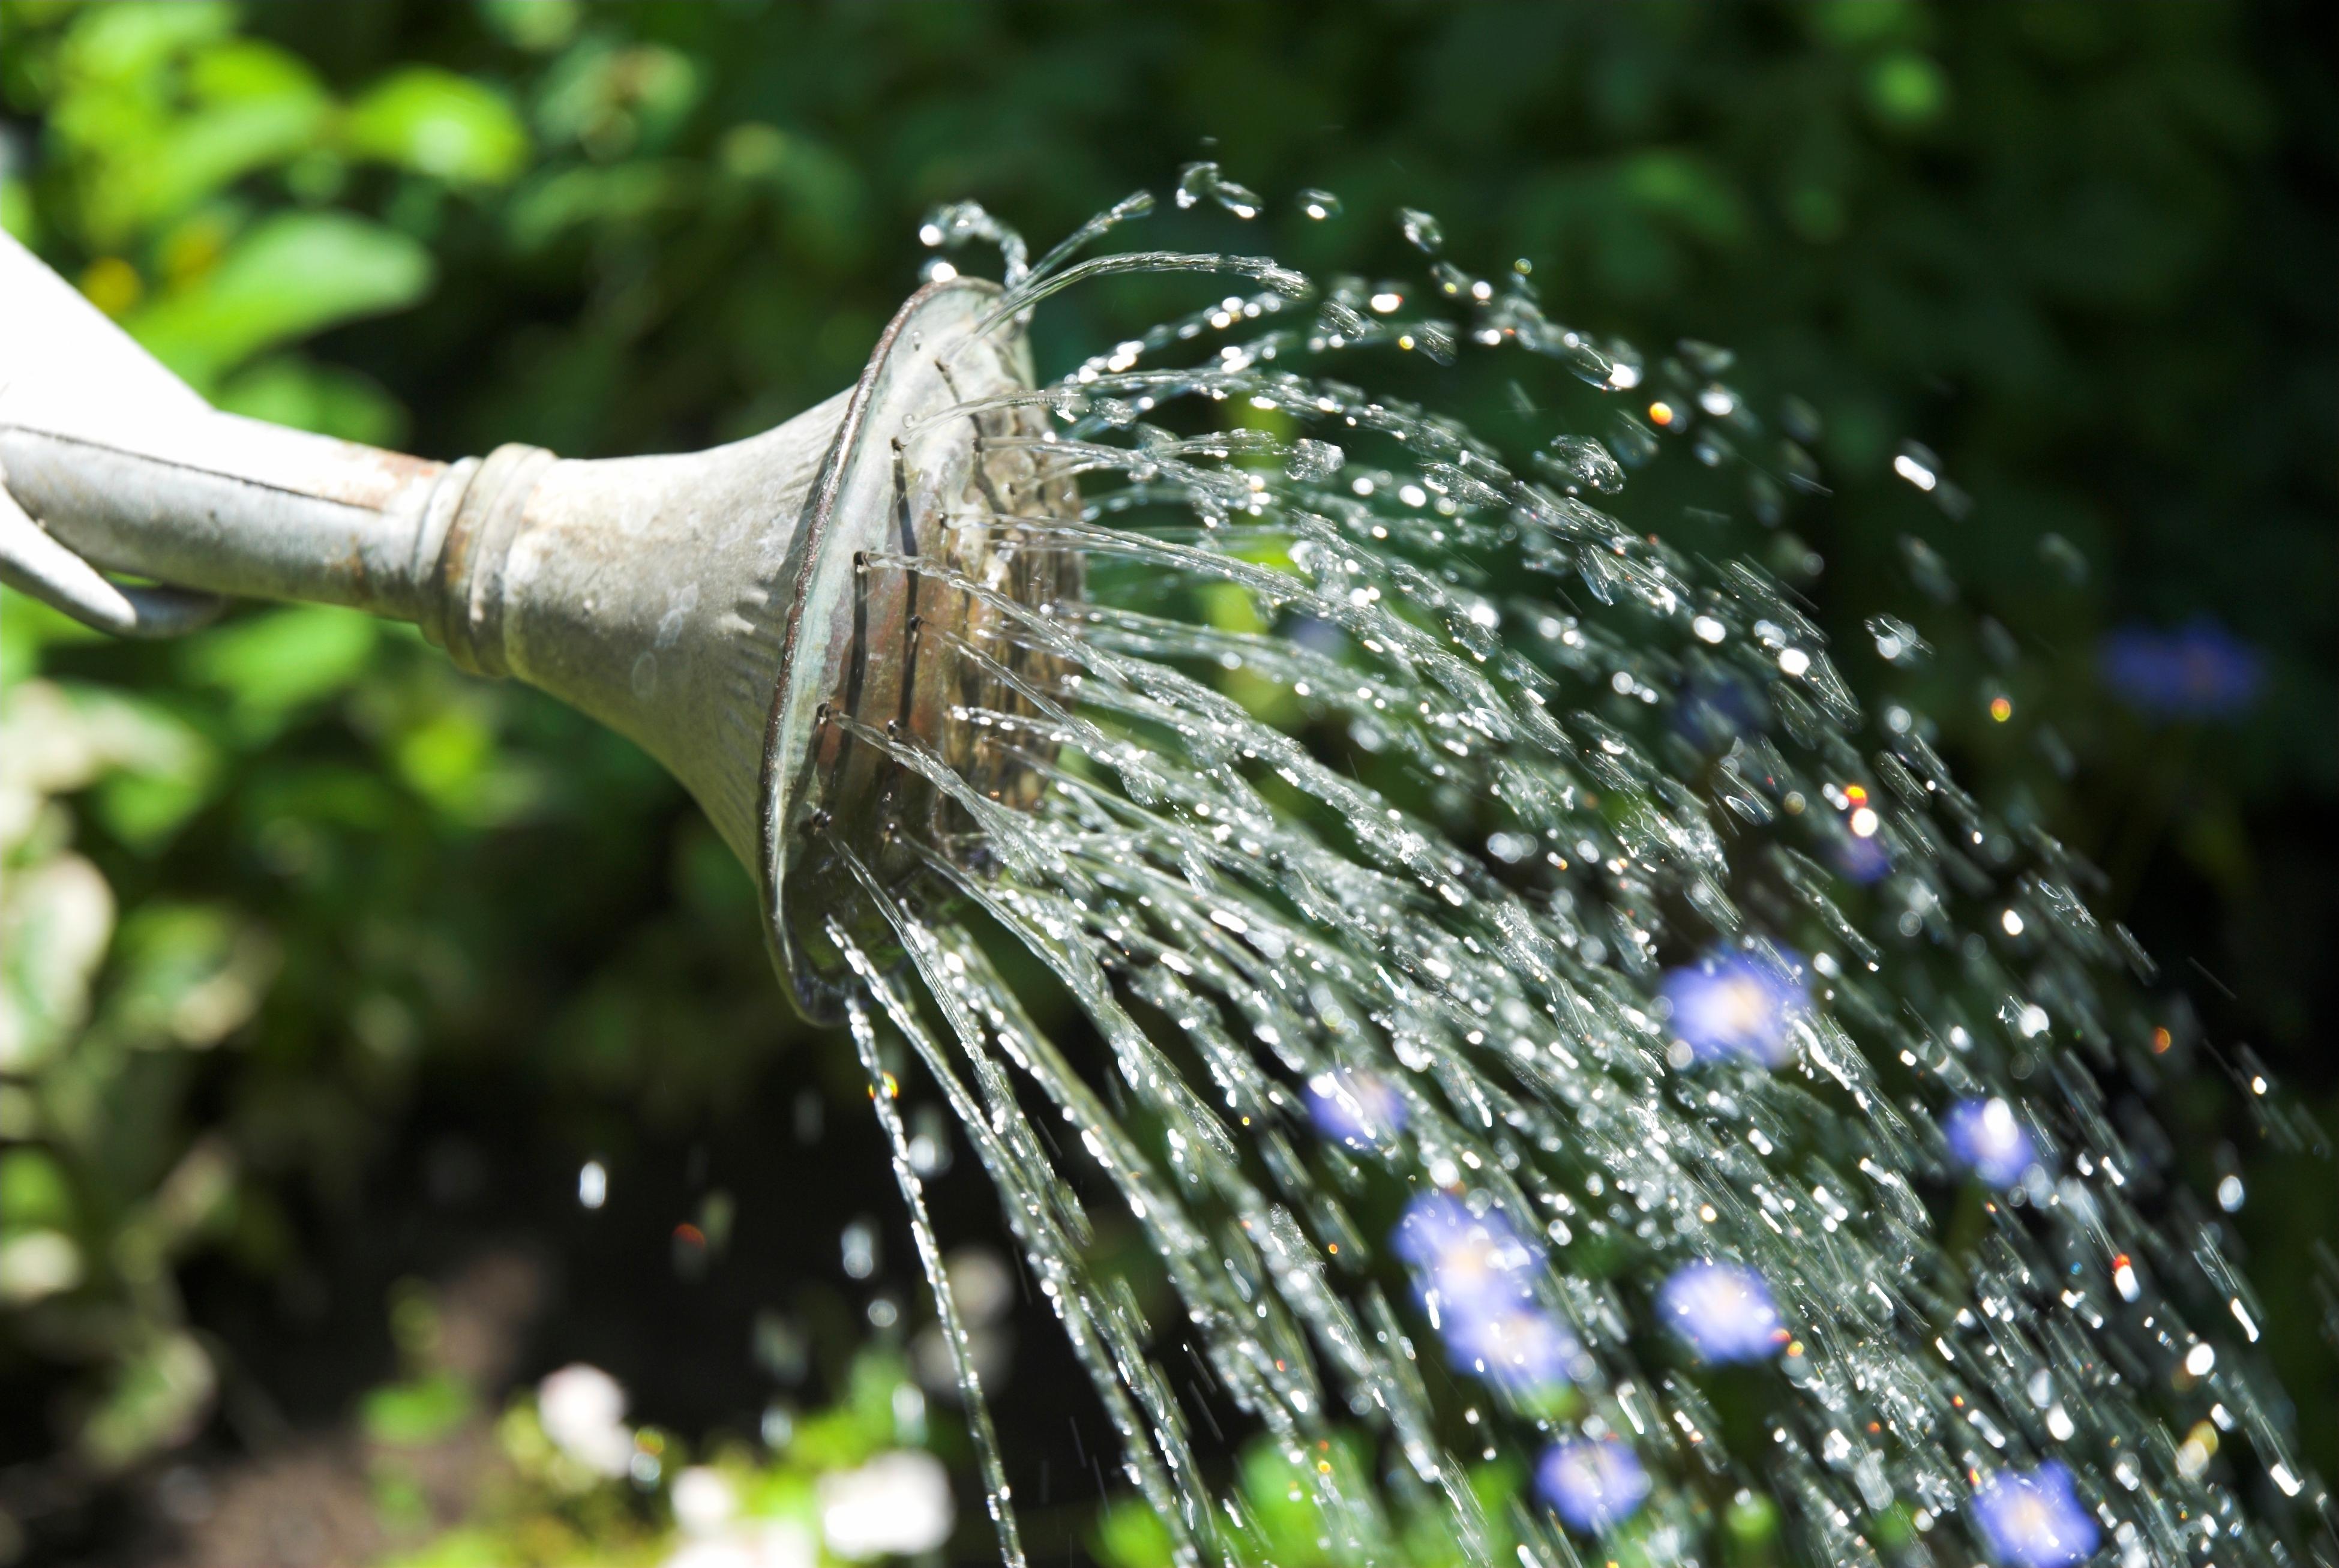  Wer im Garten Wasser sparen will, achtet auf das richtige Giessen.